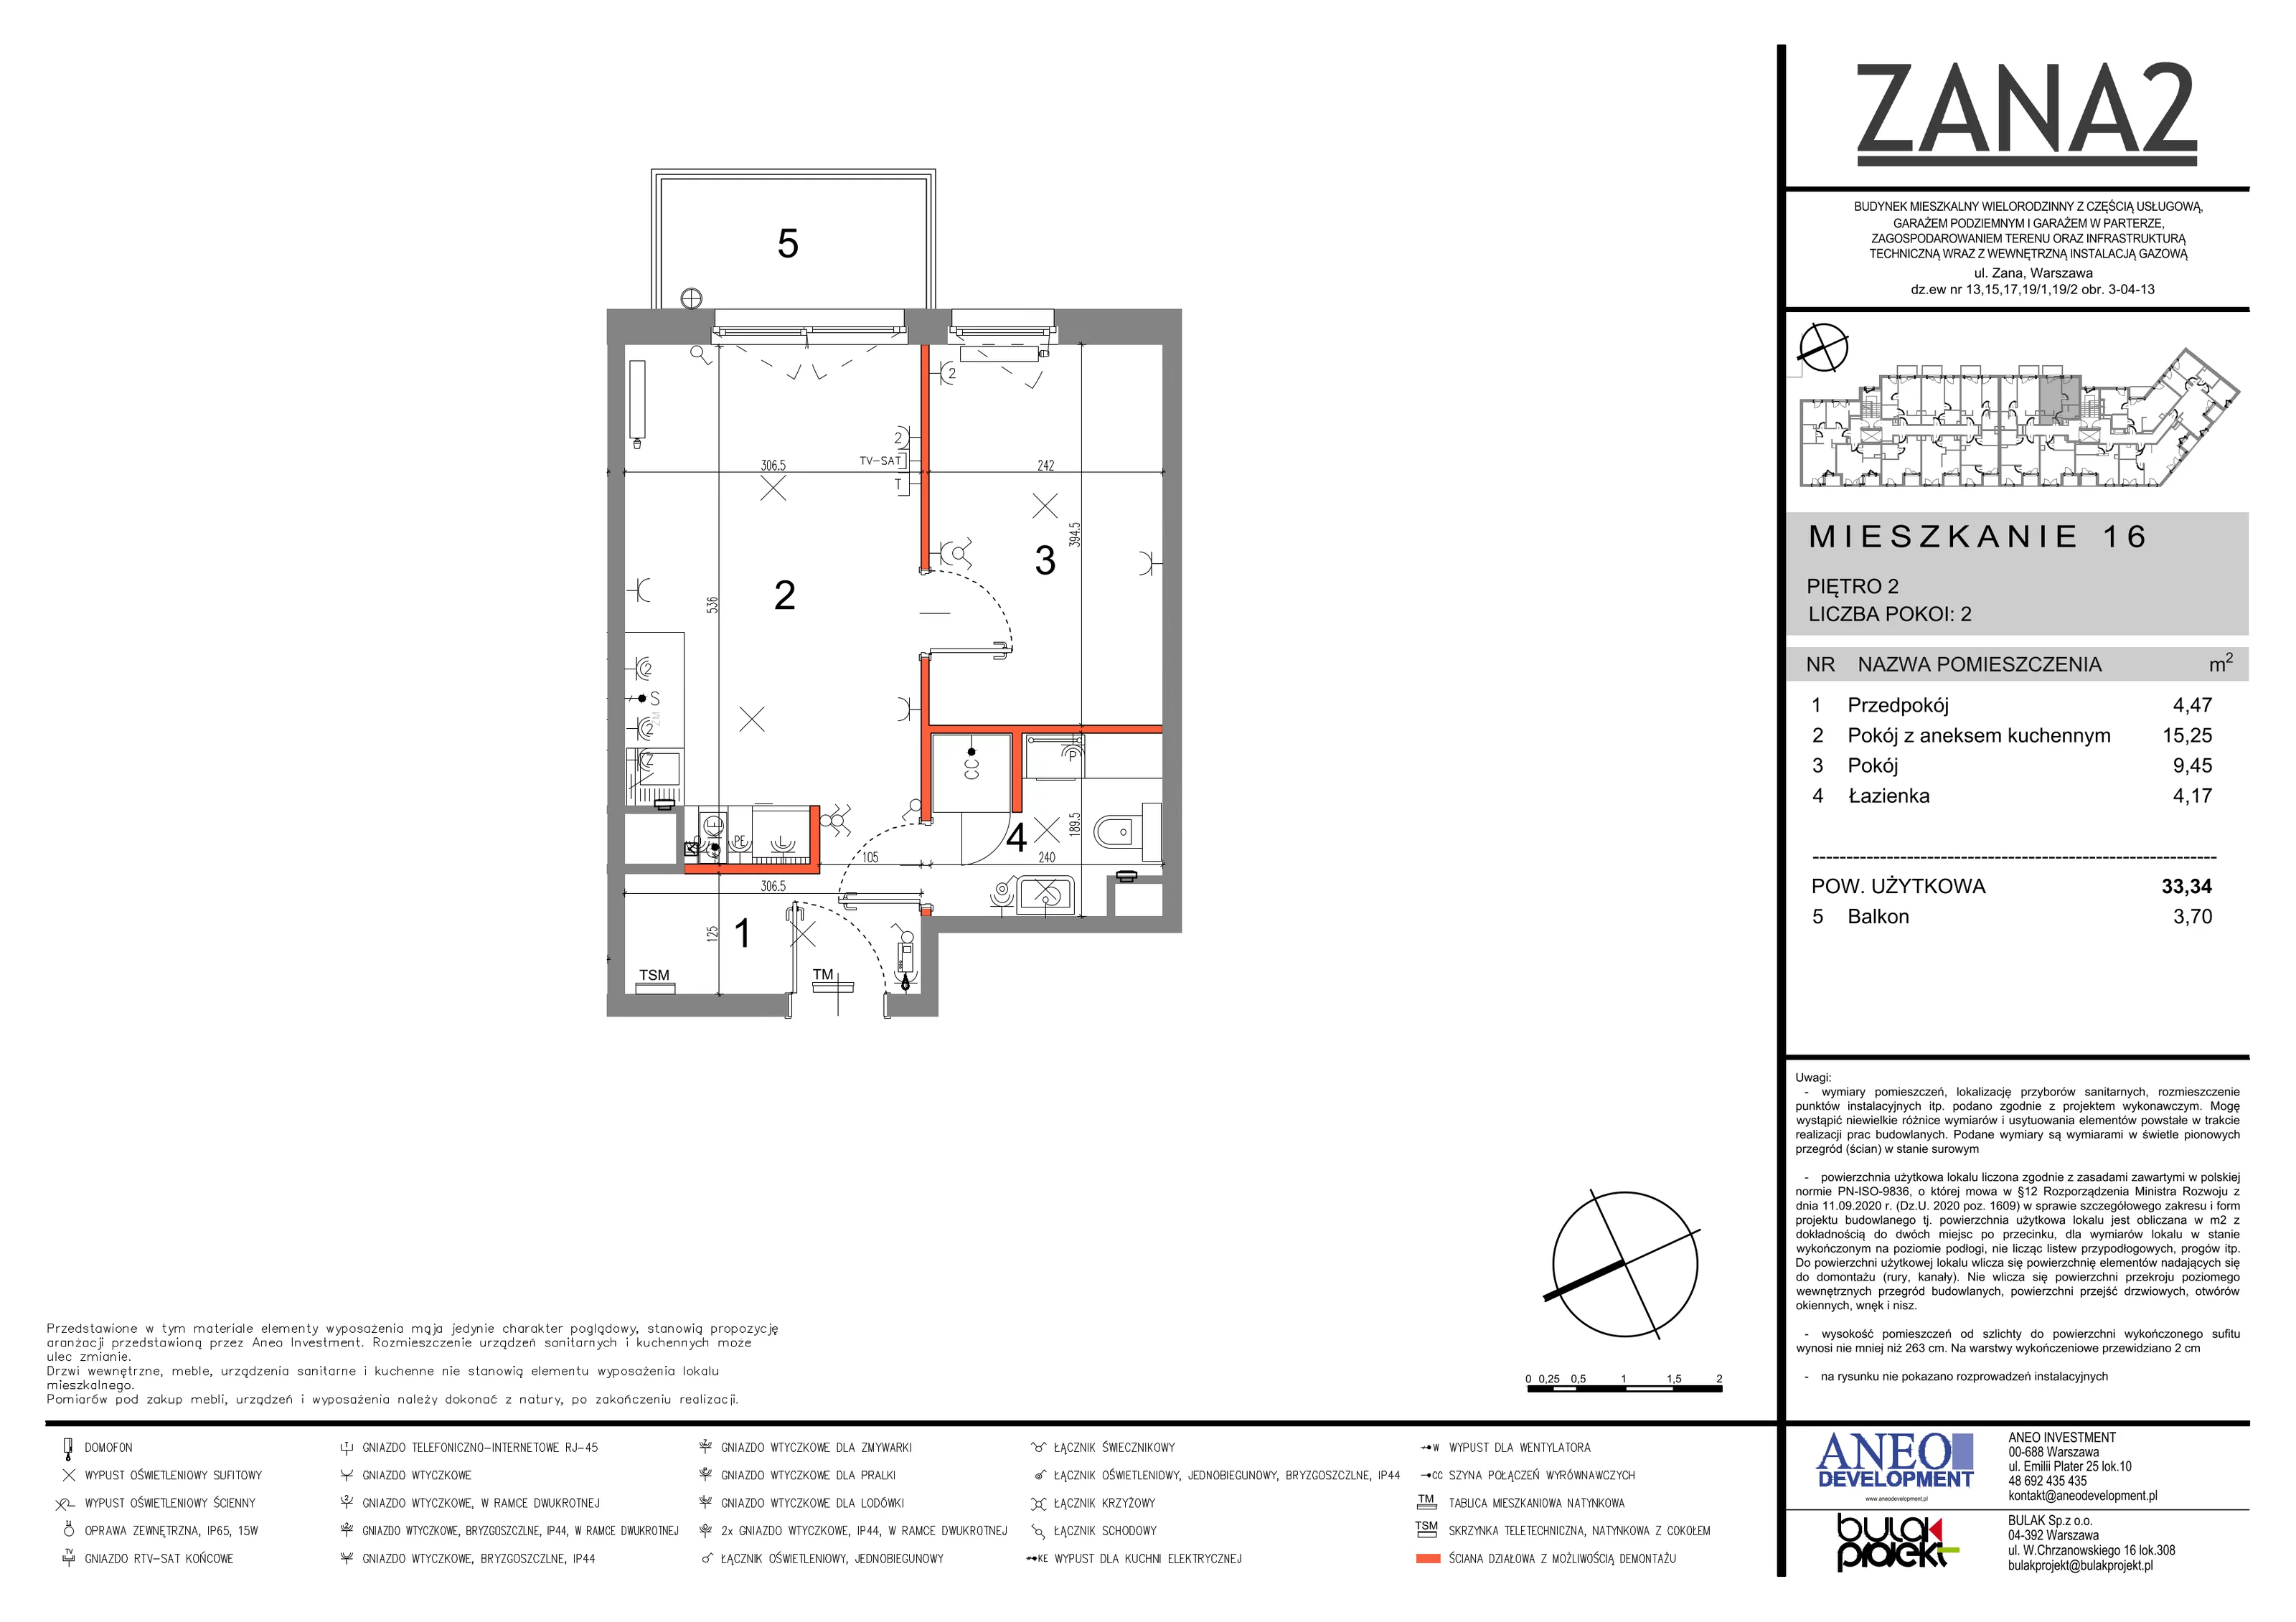 Mieszkanie 33,34 m², piętro 2, oferta nr 16, Zana 2, Warszawa, Praga Południe, Gocławek, ul. Tomasza Zana